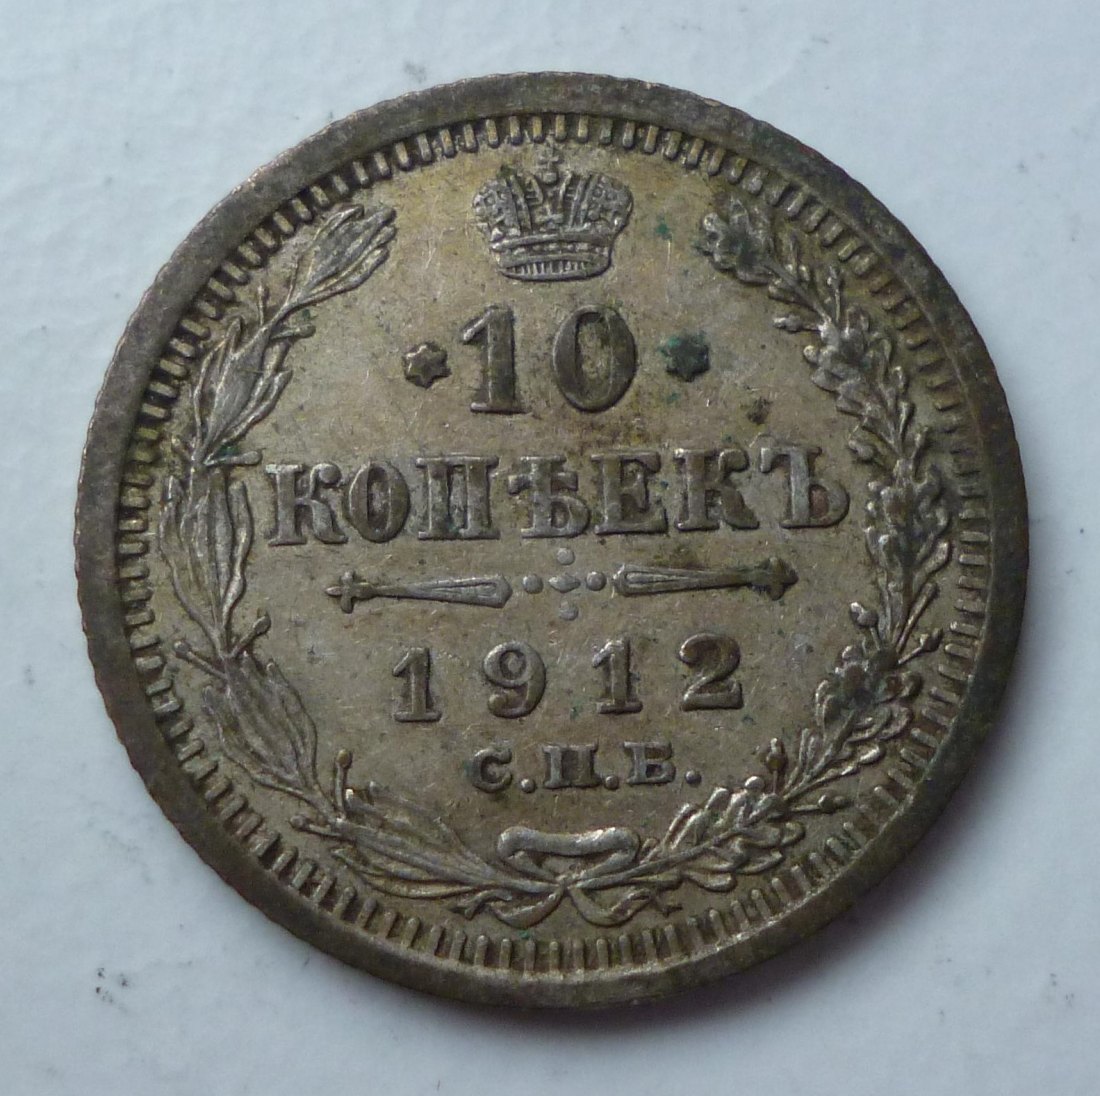  Russland 10 Kopeken 1912 gekrönter Doppeladler Silber   